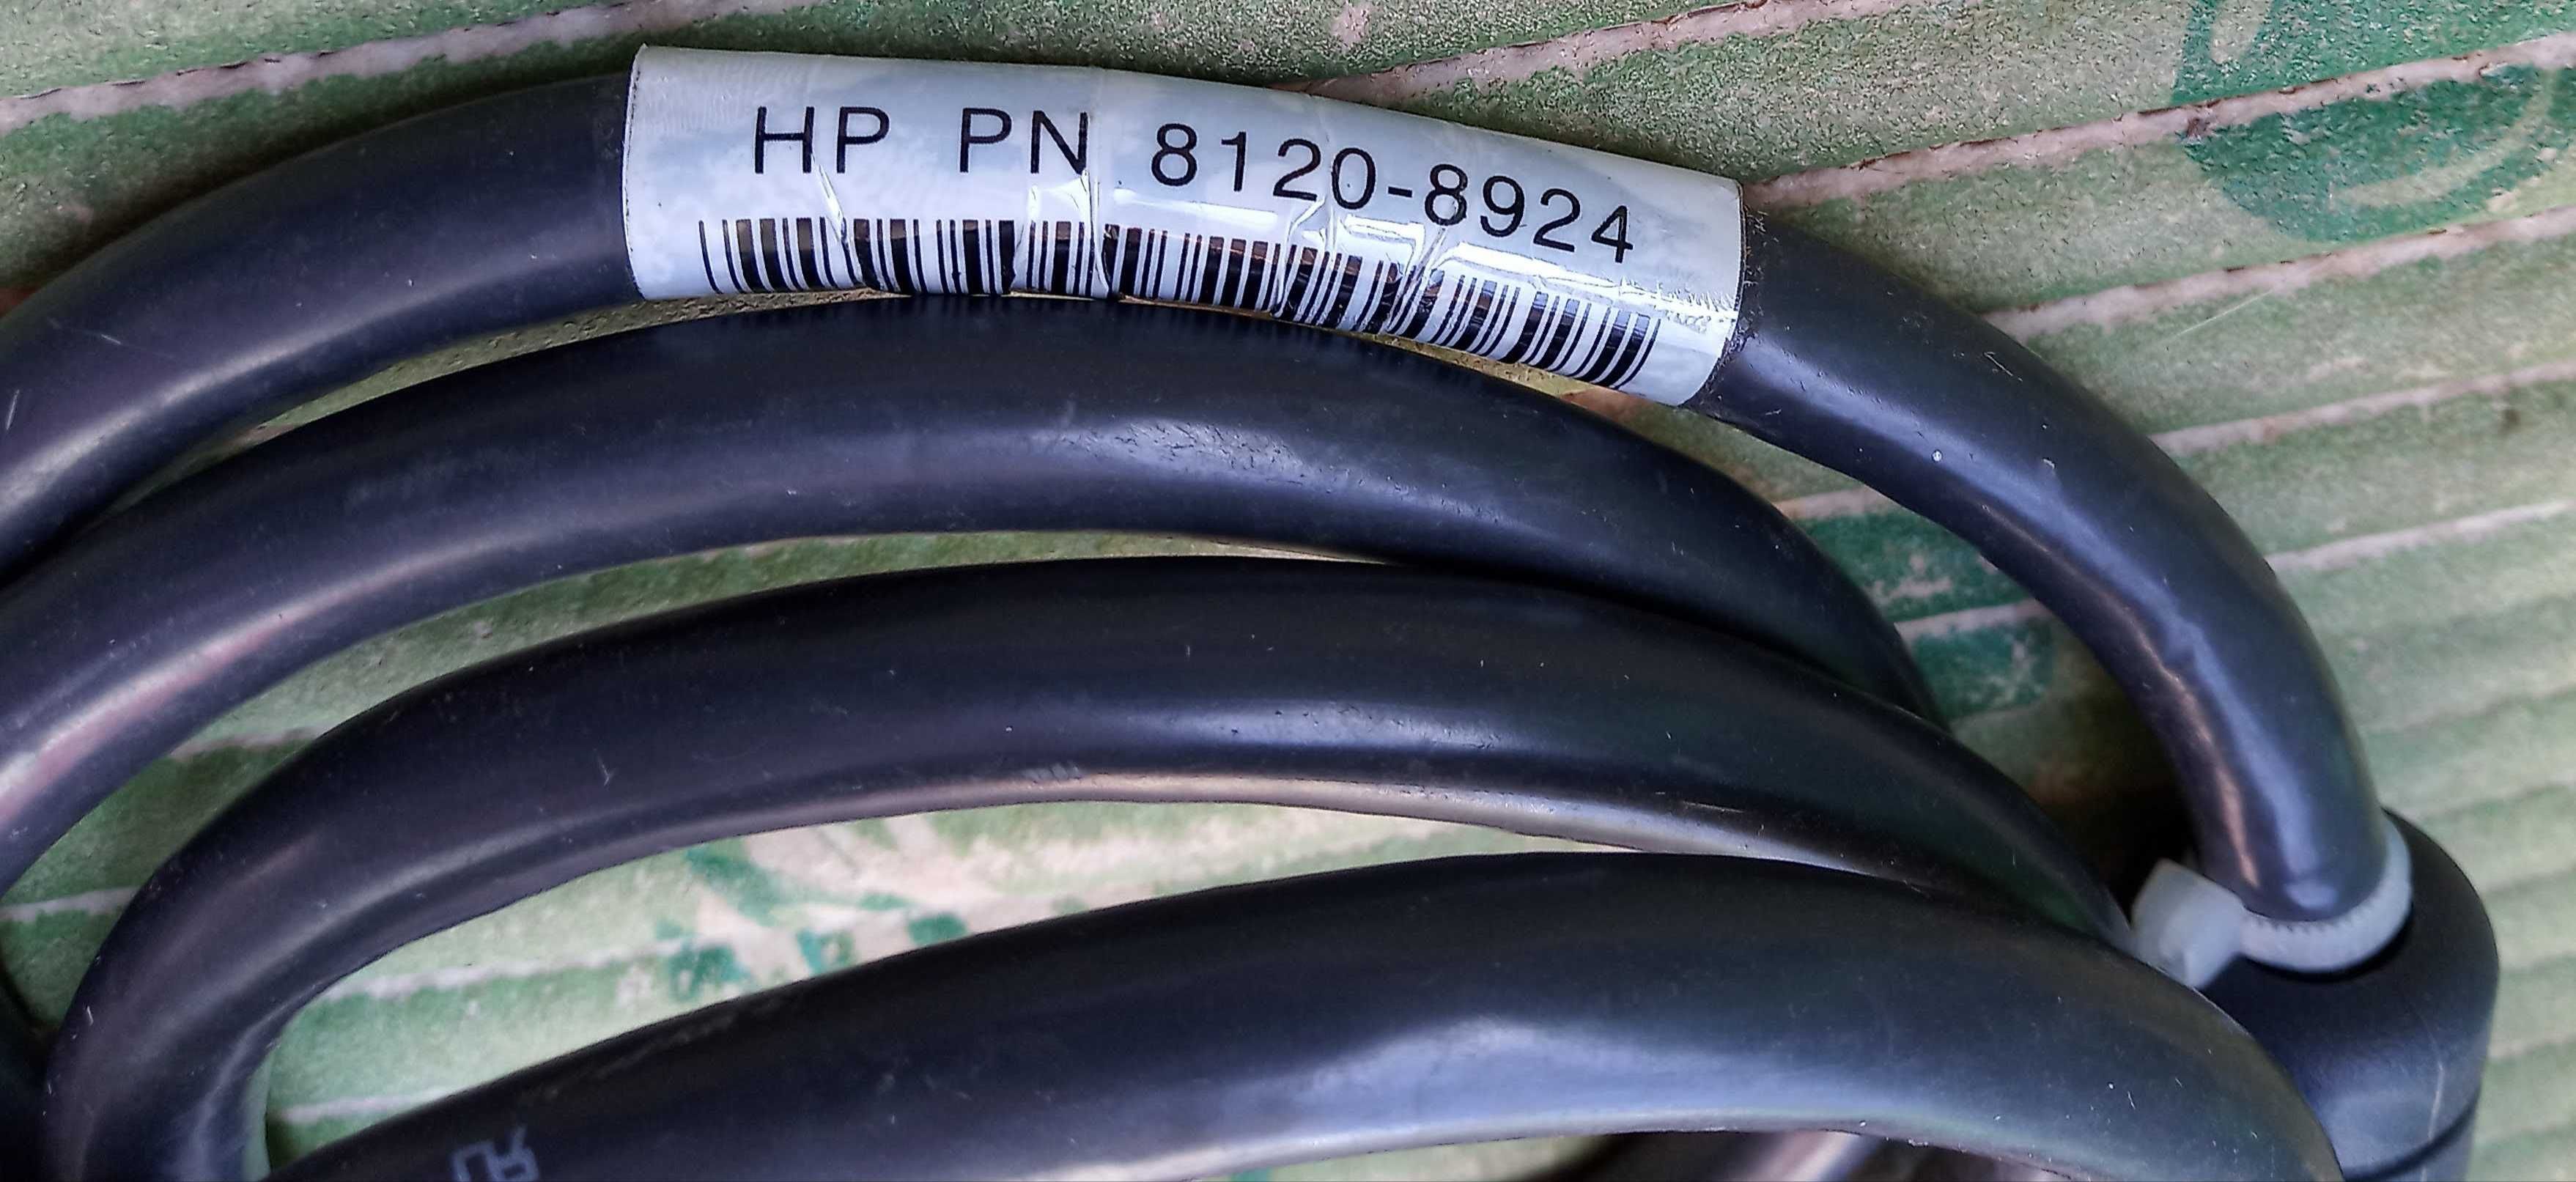 HP Procurve, кабель  резервного 
источника питания, 1.2 м (позолота )